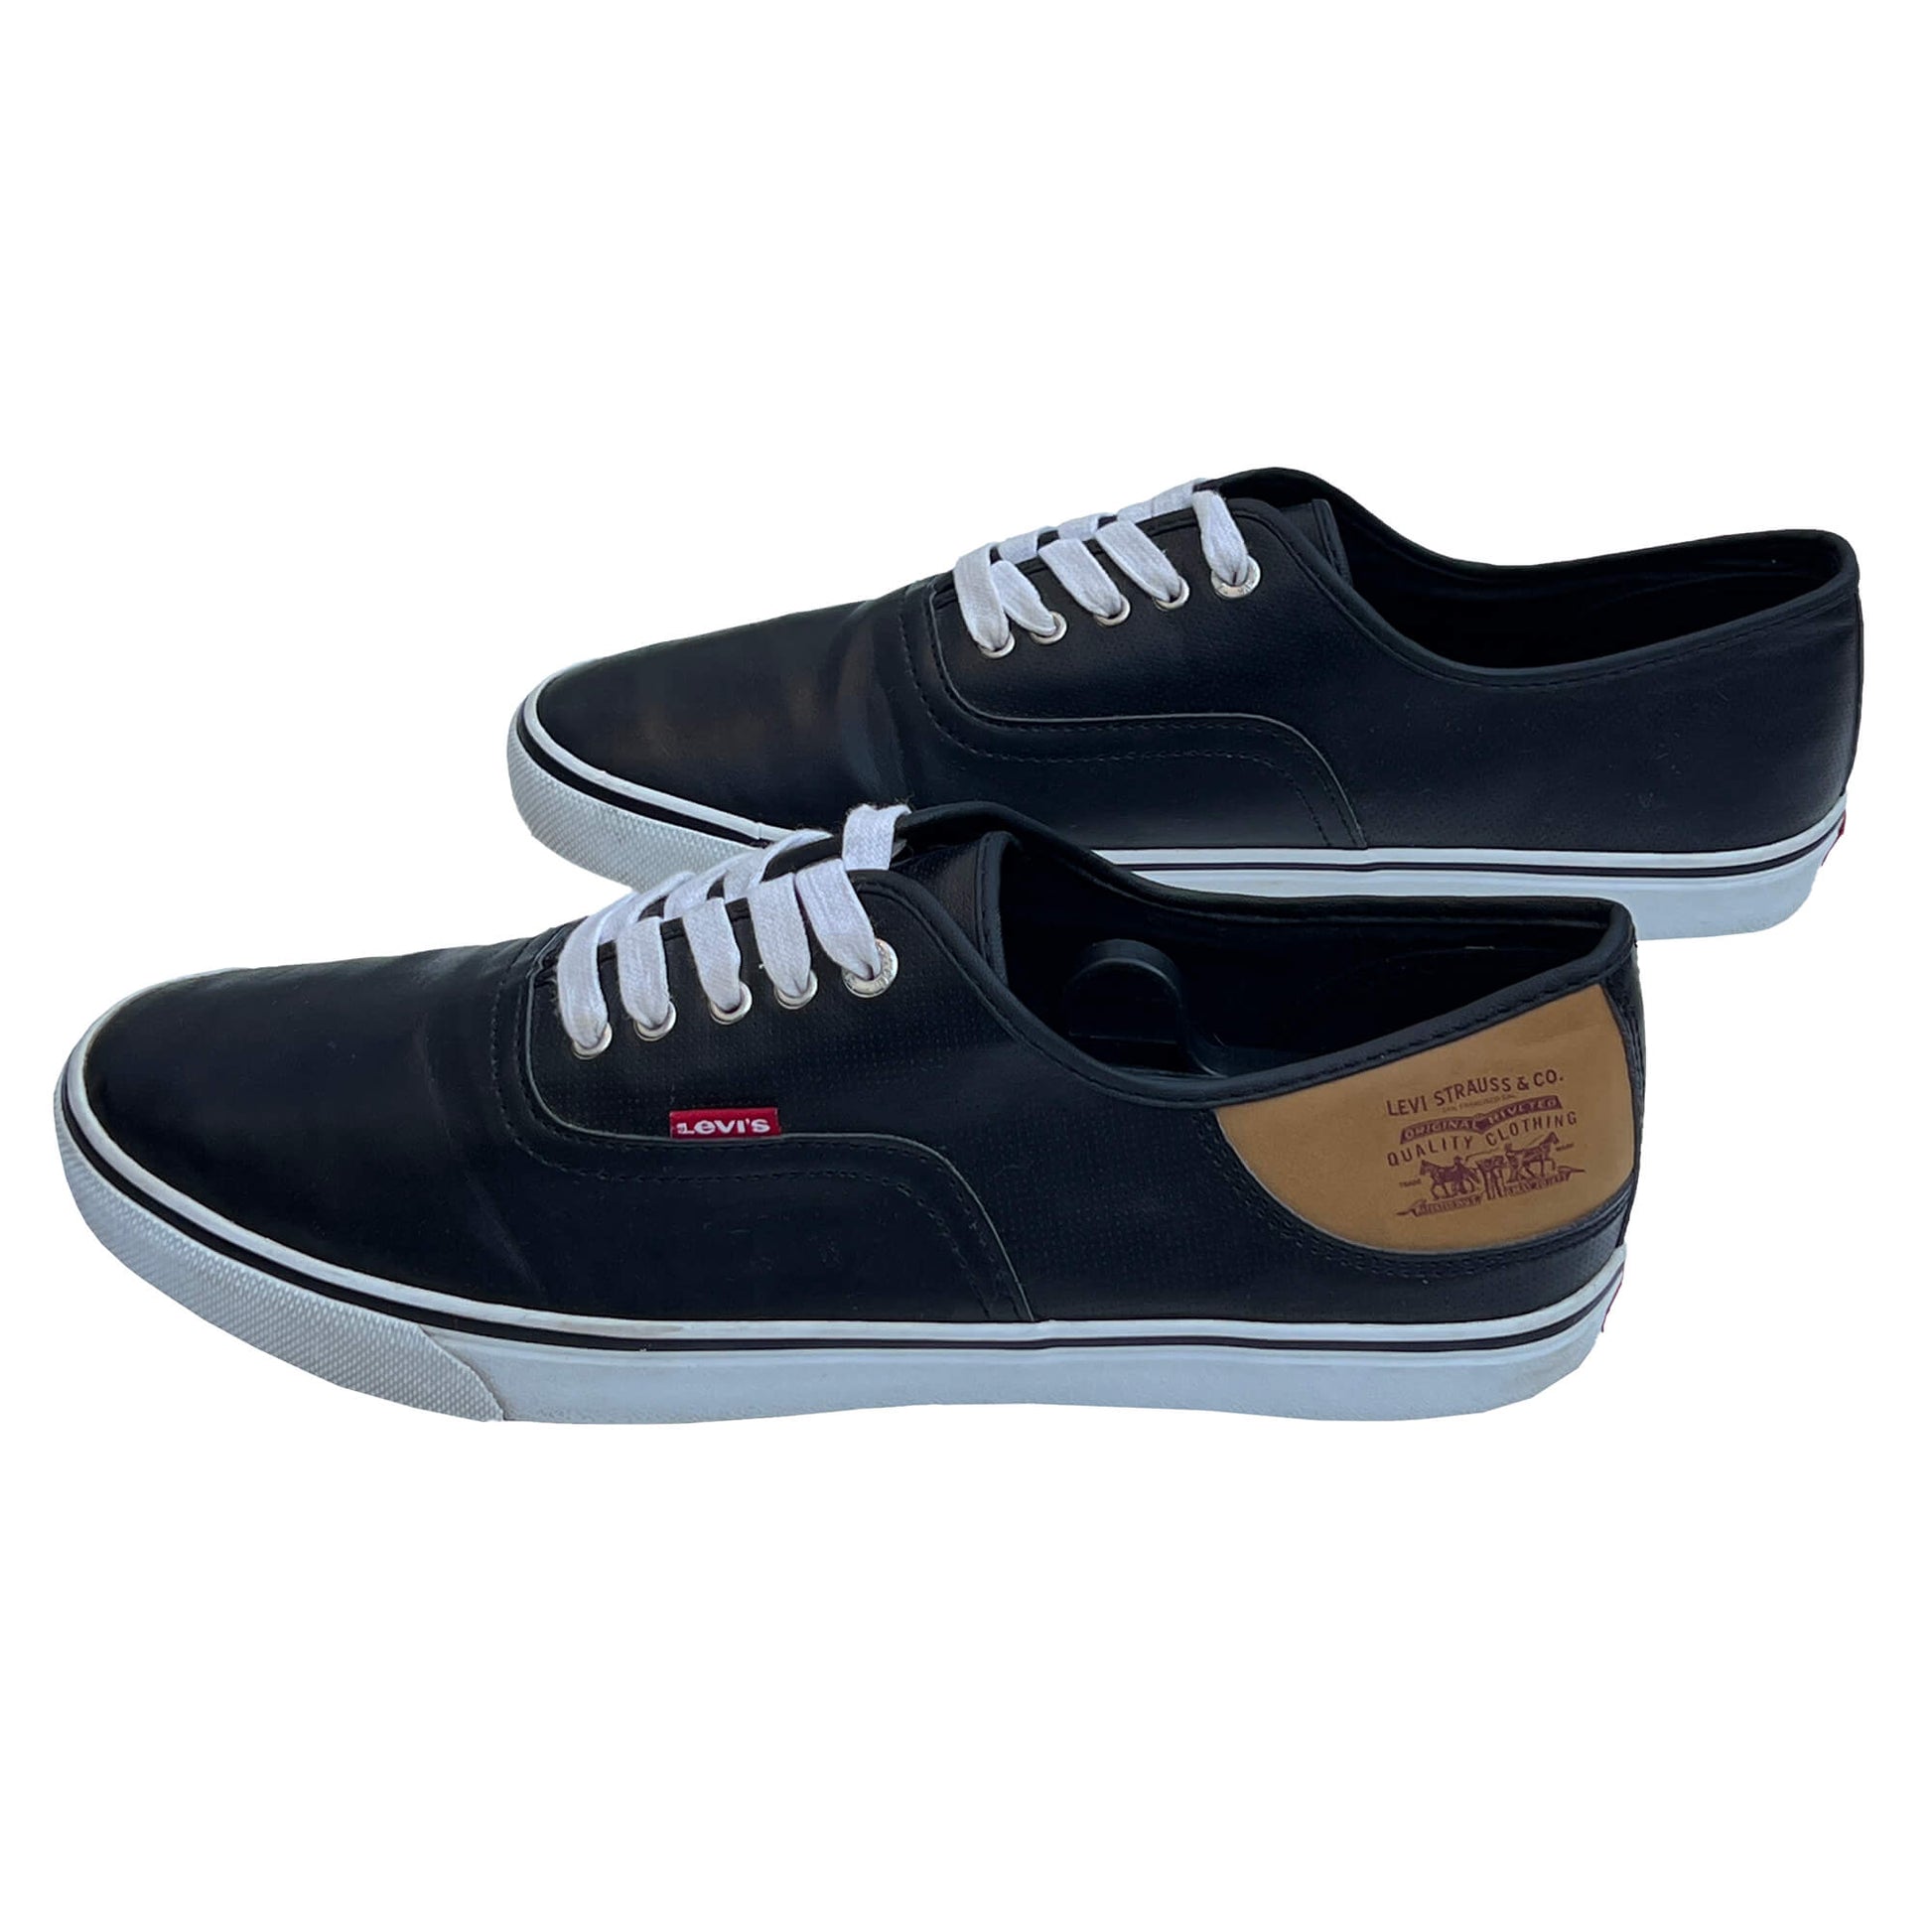 Levis-Mens-Black-Leather-Casual-Shoes.-Size-13.-Shop-eBargainsAndDeals.com